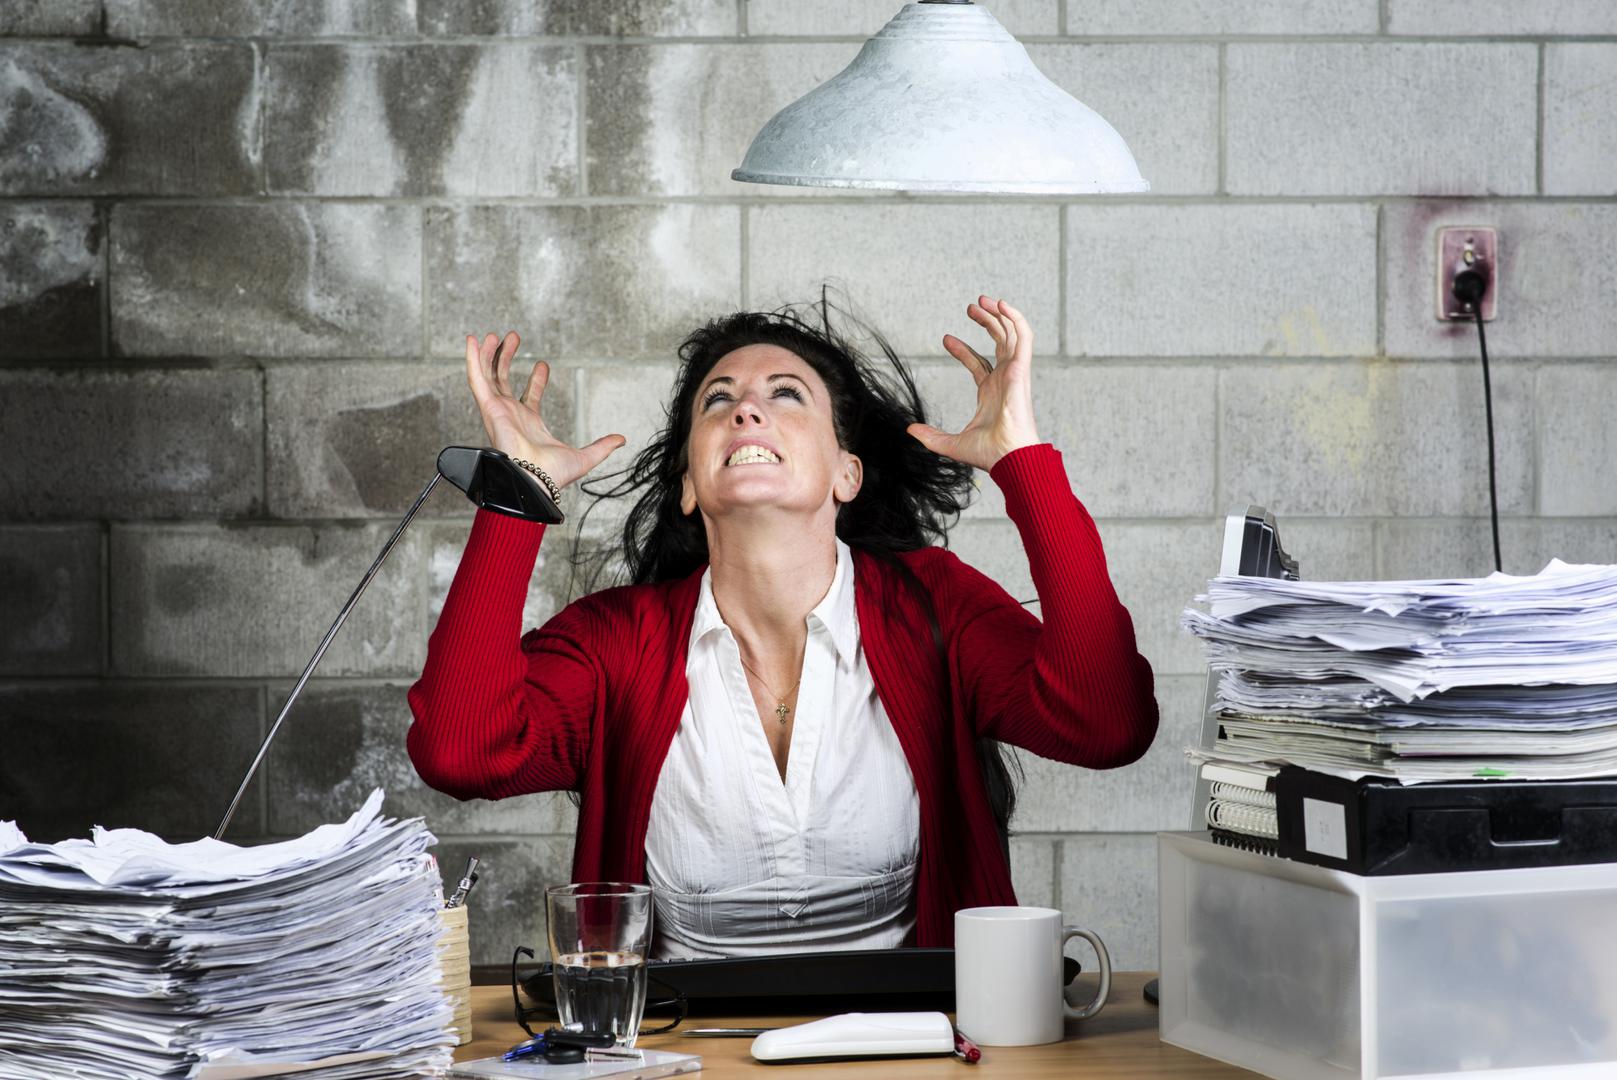 Nedavna anketa, koju je provela internetska stranica Comparably, zaključila je da je 65 posto zaposlenika pod stresom na radnom mjestu, a kod 10 posto njih to itekako utječe na produktivnost i nemogućnost učinkovitog obavljanja obveza.

